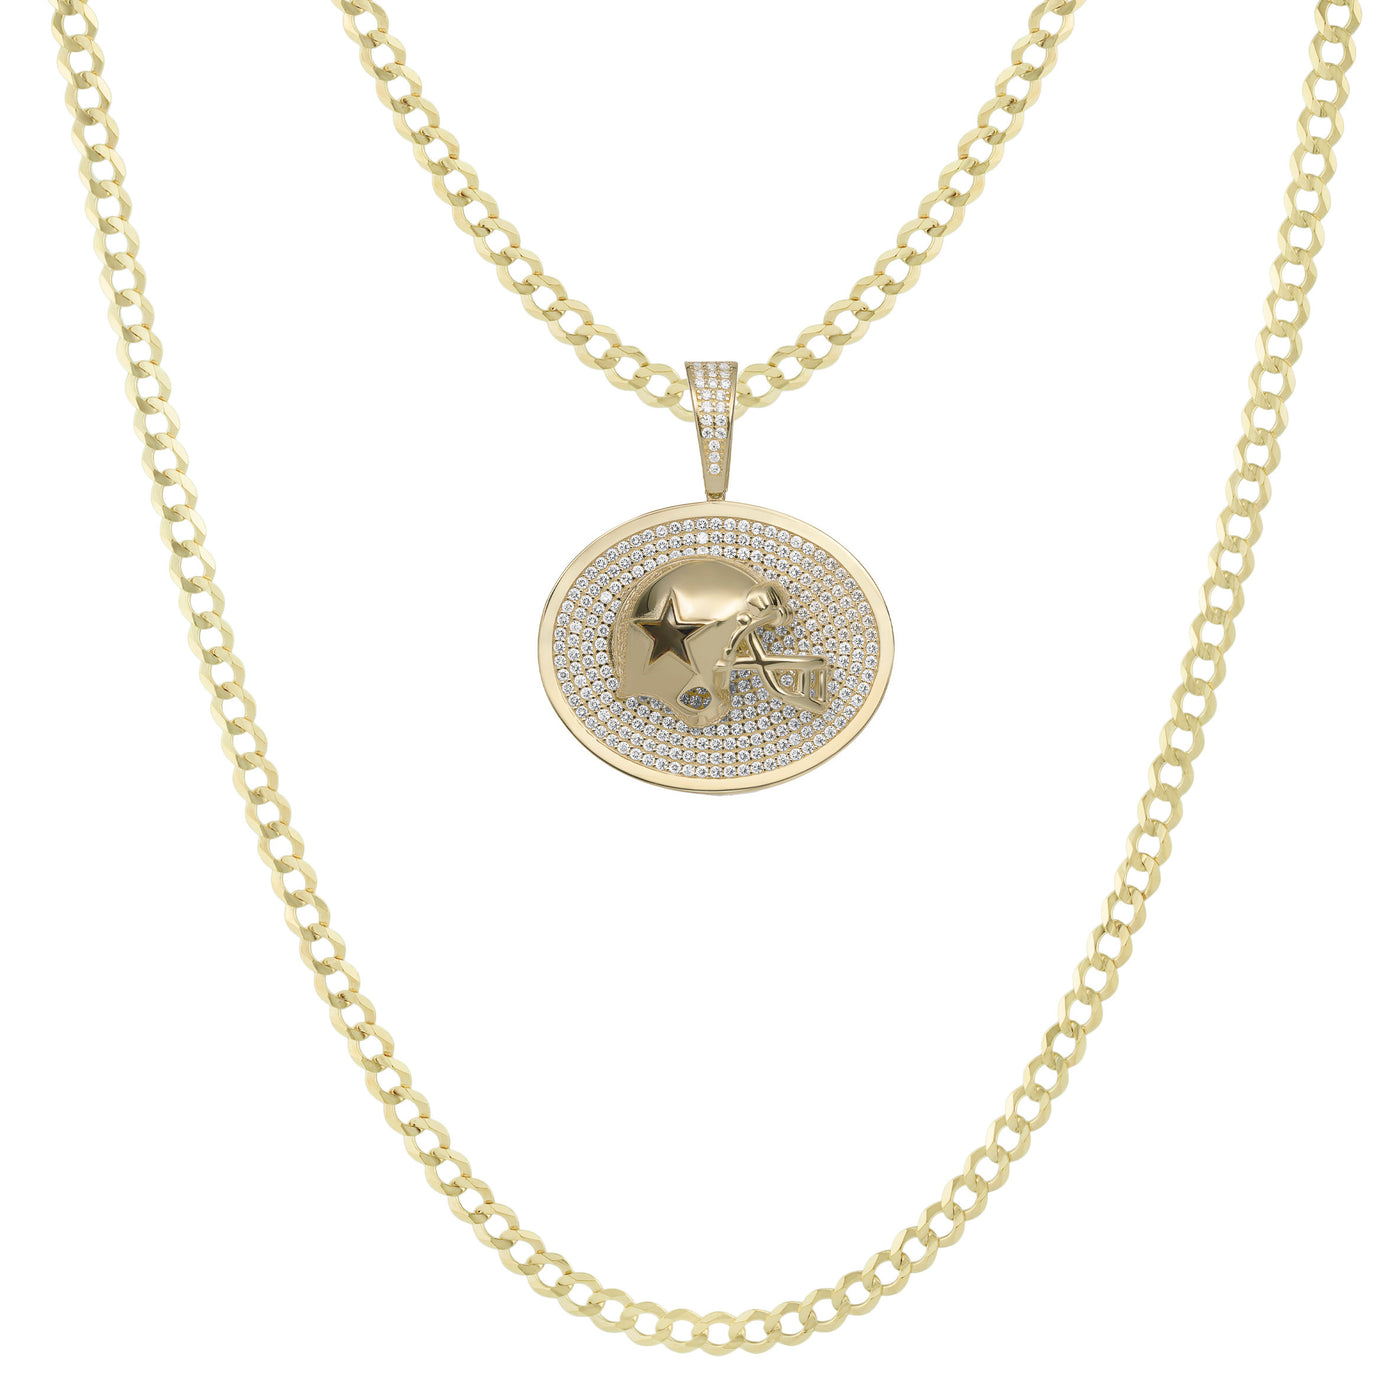 1 3/8" CZ Dallas Cowboys Helmet Medallion Pendant & Chain Necklace Set 10K Yellow Gold